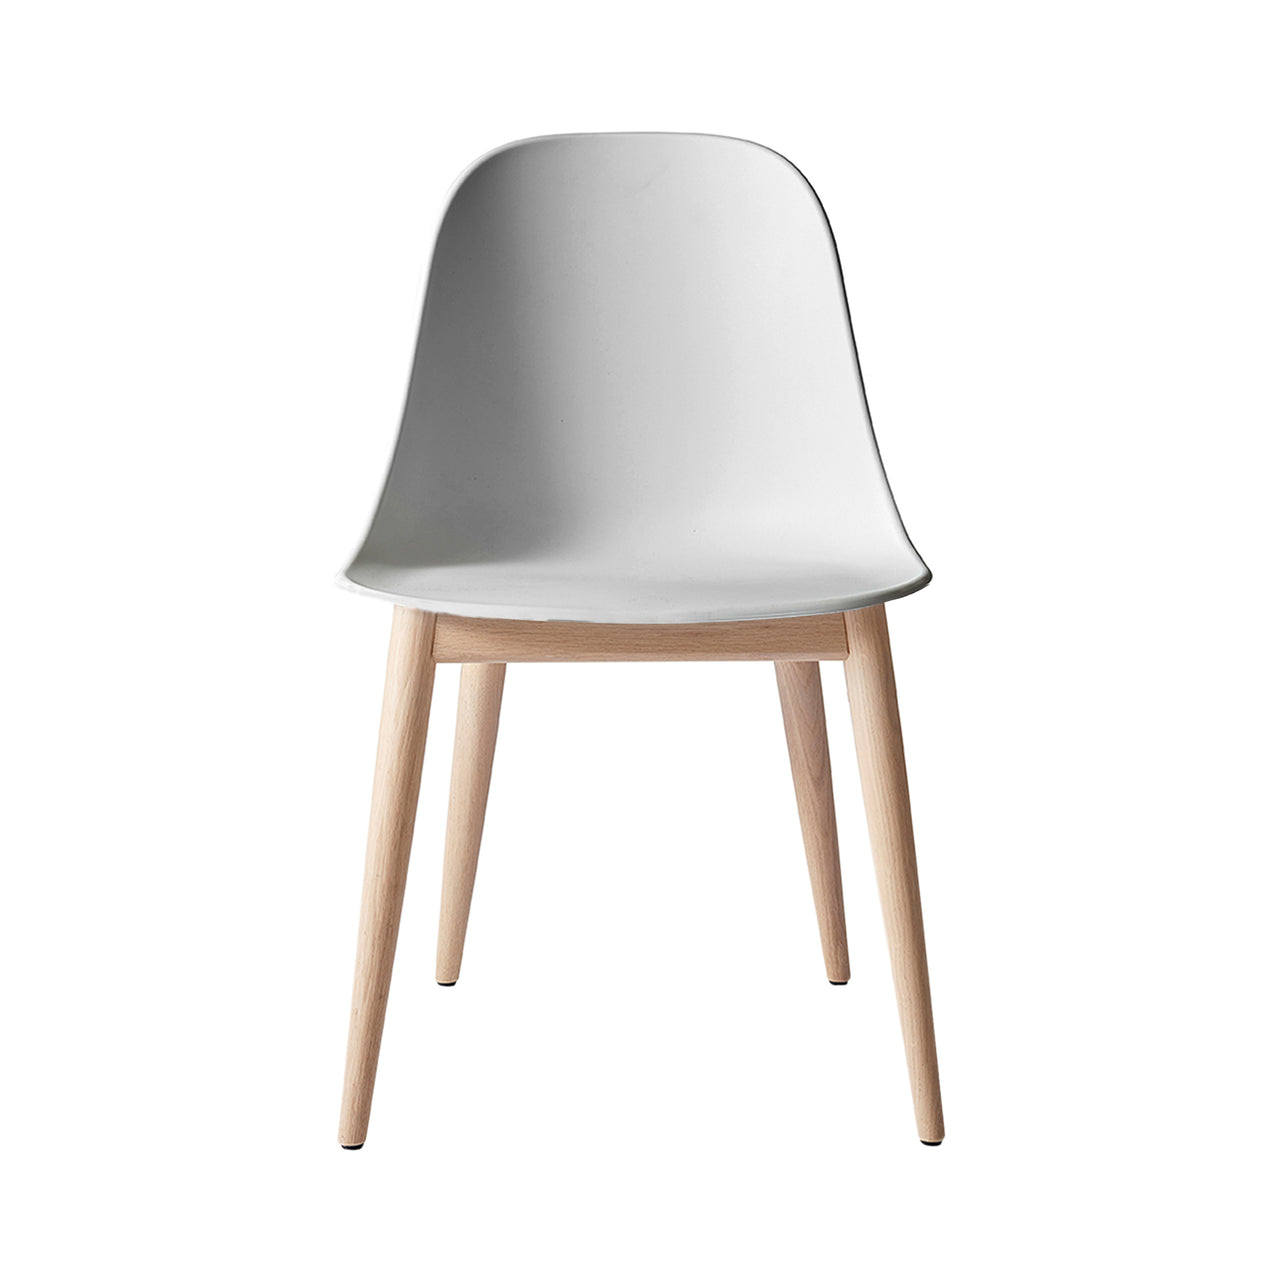 Harbour Side Chair: Wood Base + Natural Oak + Light Grey